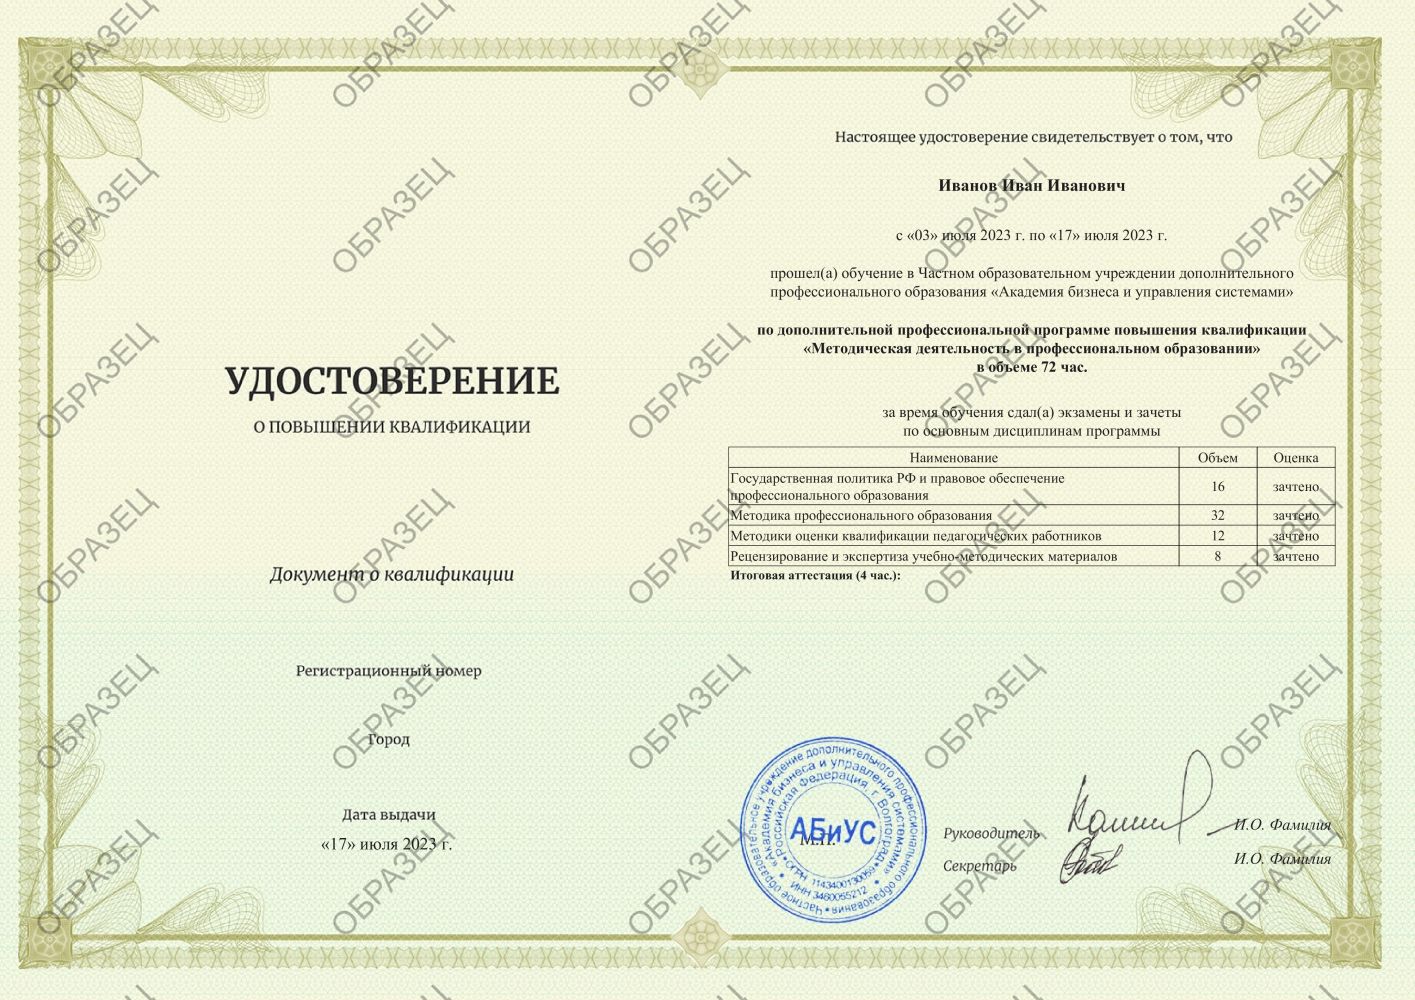 Удостоверение Методическая деятельность в профессиональном образовании 72 часа 3500 руб.